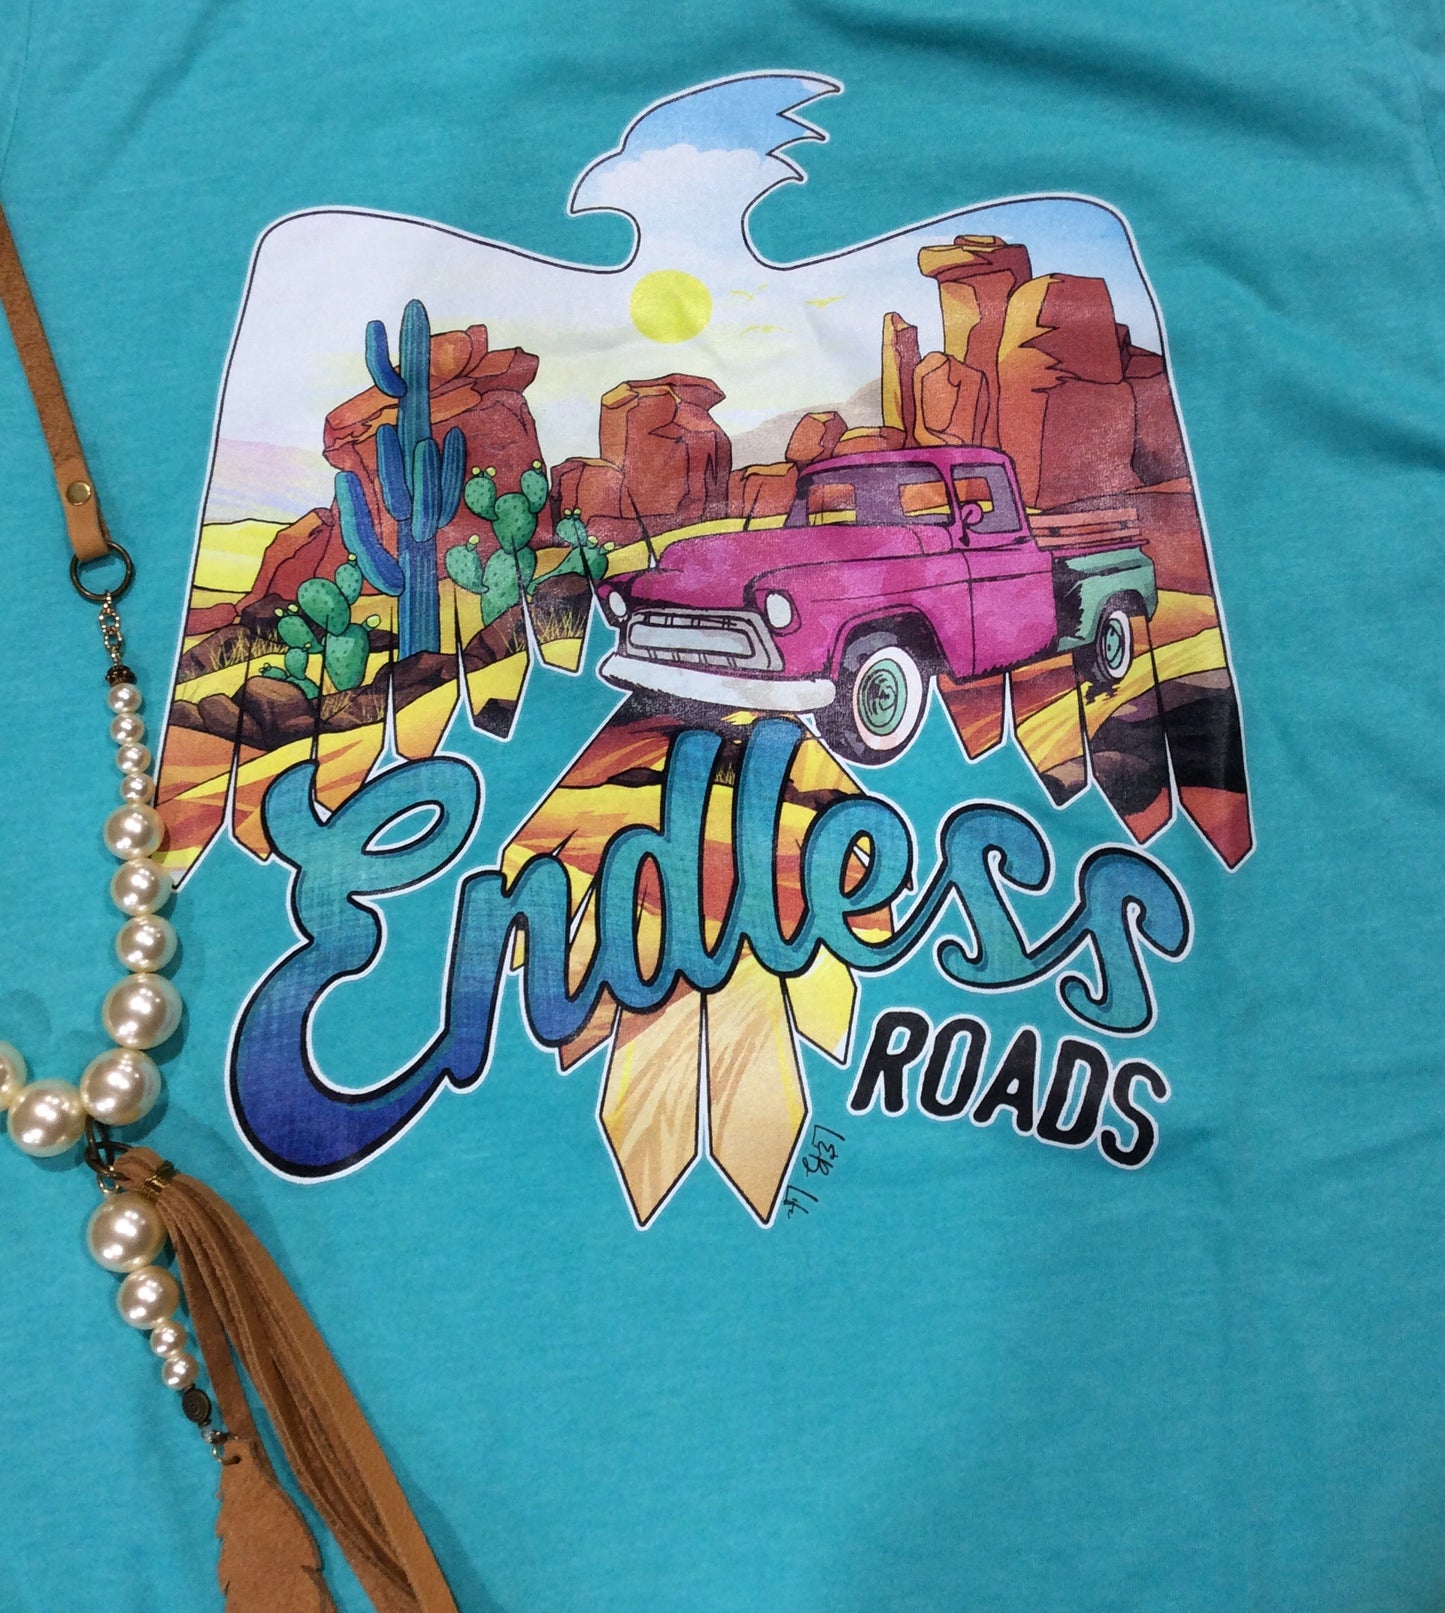 Endless Roads Tee Shirt